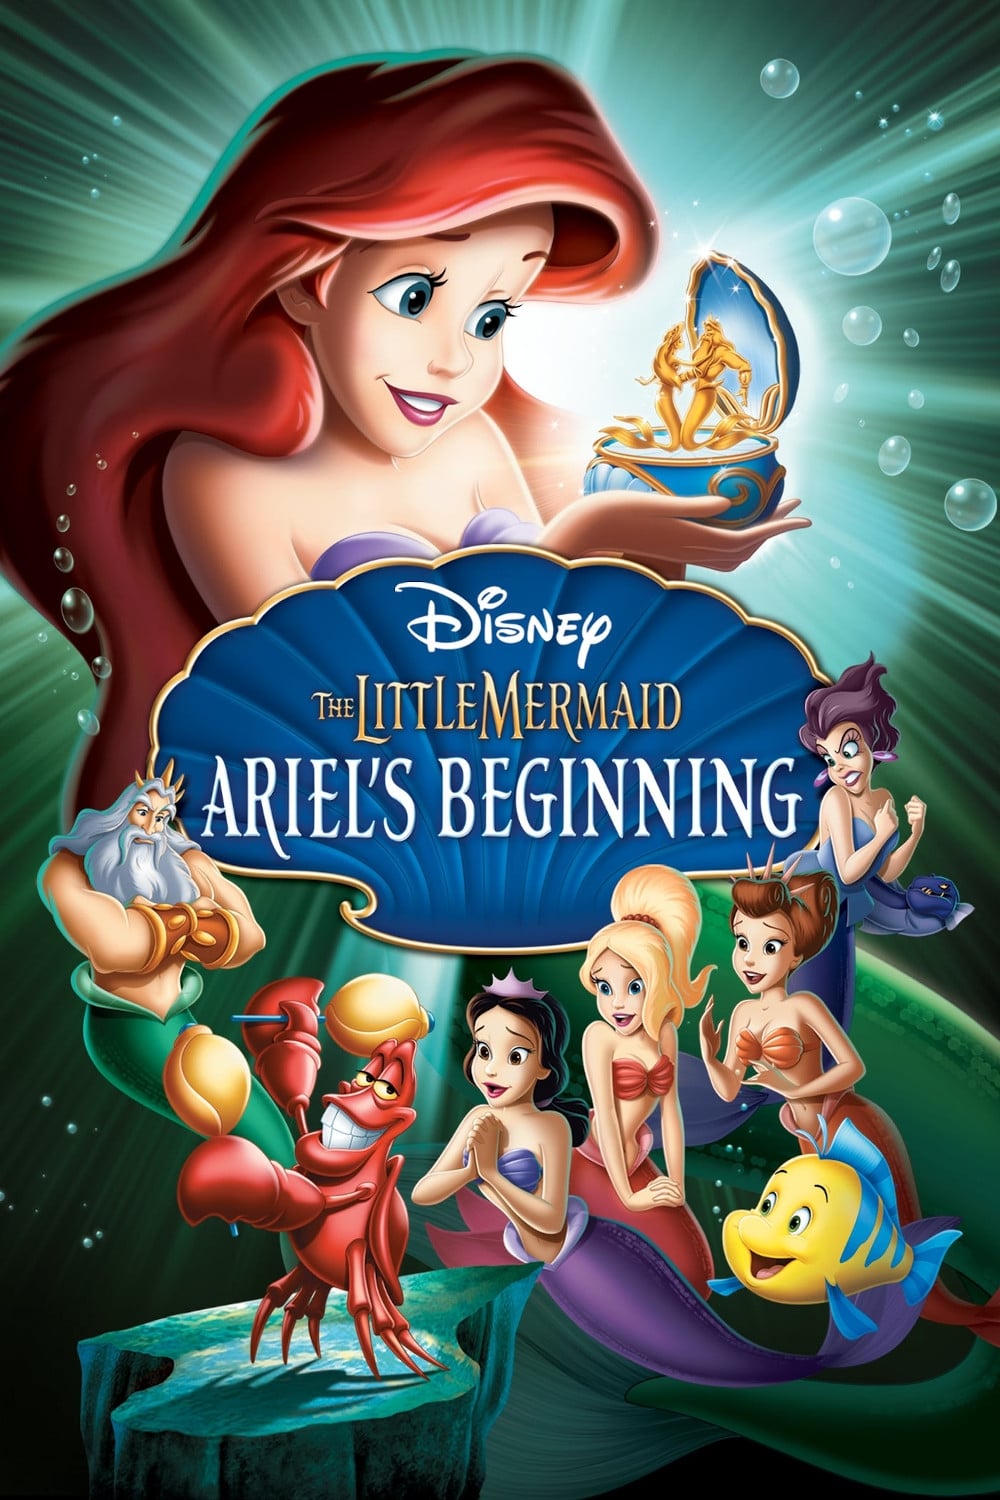 Arielle, die Meerjungfrau - Wie alles begann